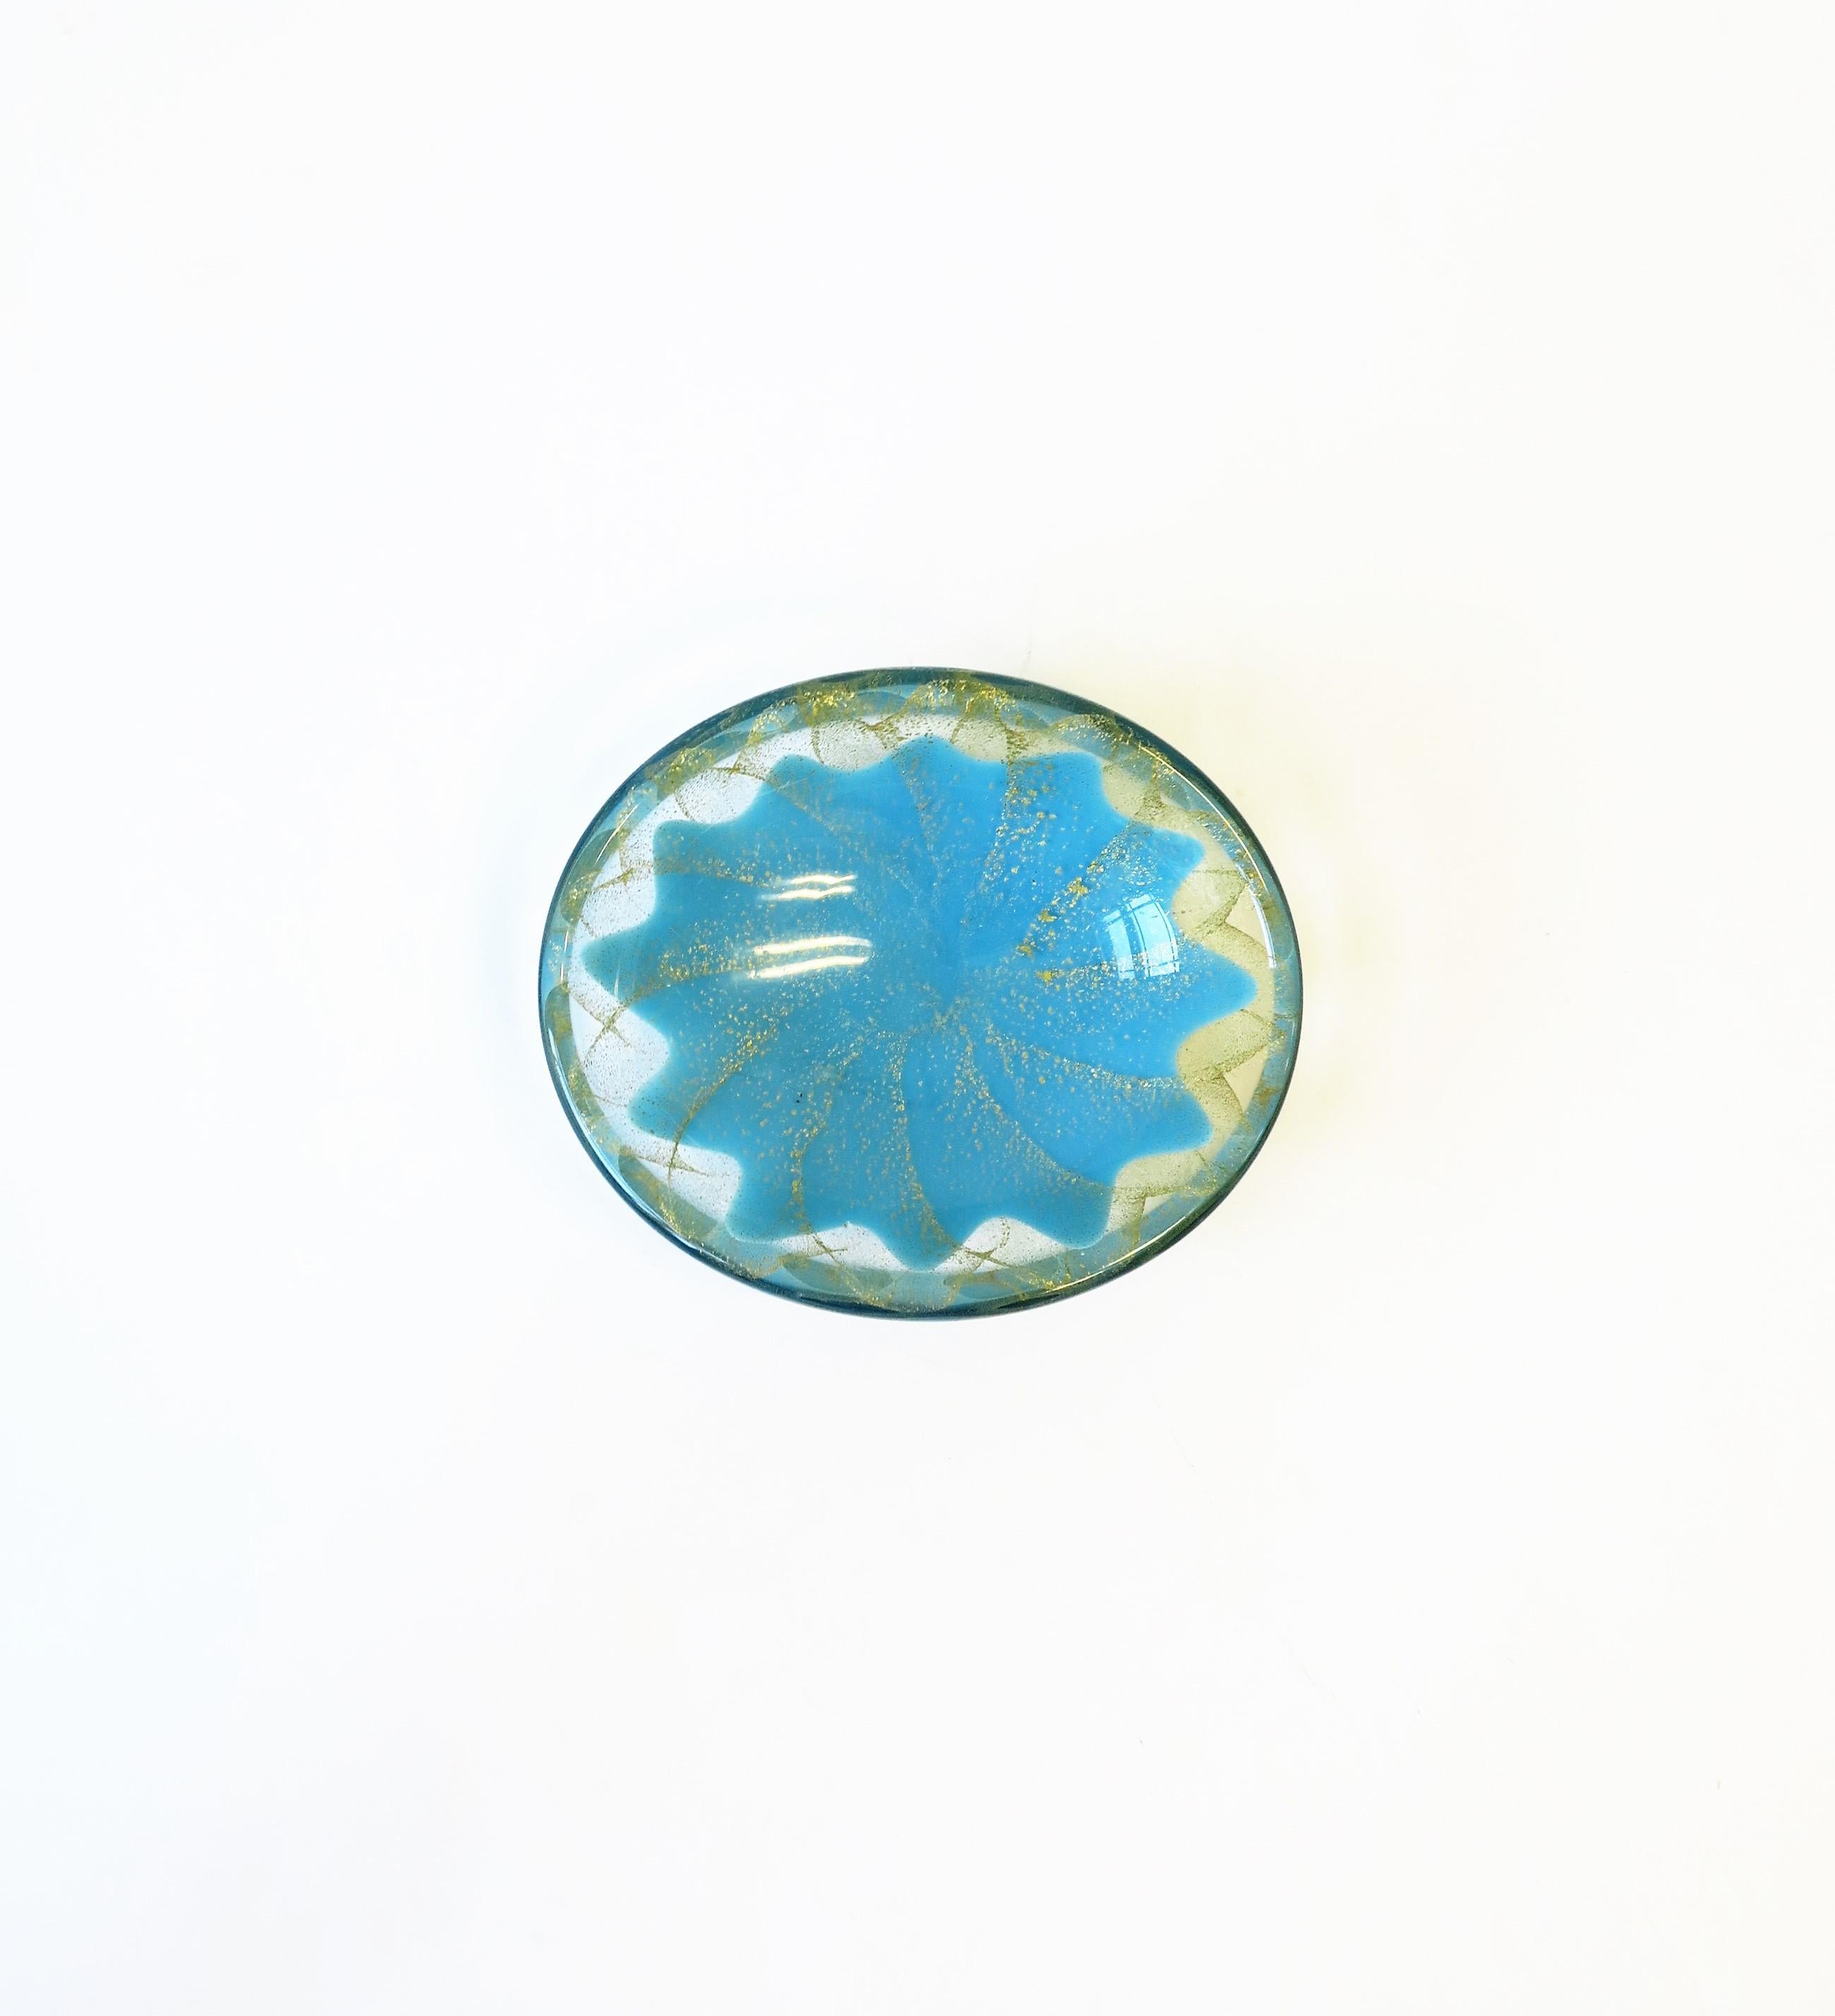 Un petit bol ovale en verre d'art italien Murano bleu ciel et or, vers le milieu du 20e siècle, Italie. Idéal comme pièce autonome ou pour contenir de petits objets tels que des bijoux sur un bureau, une vanité, une table de nuit, une commode,